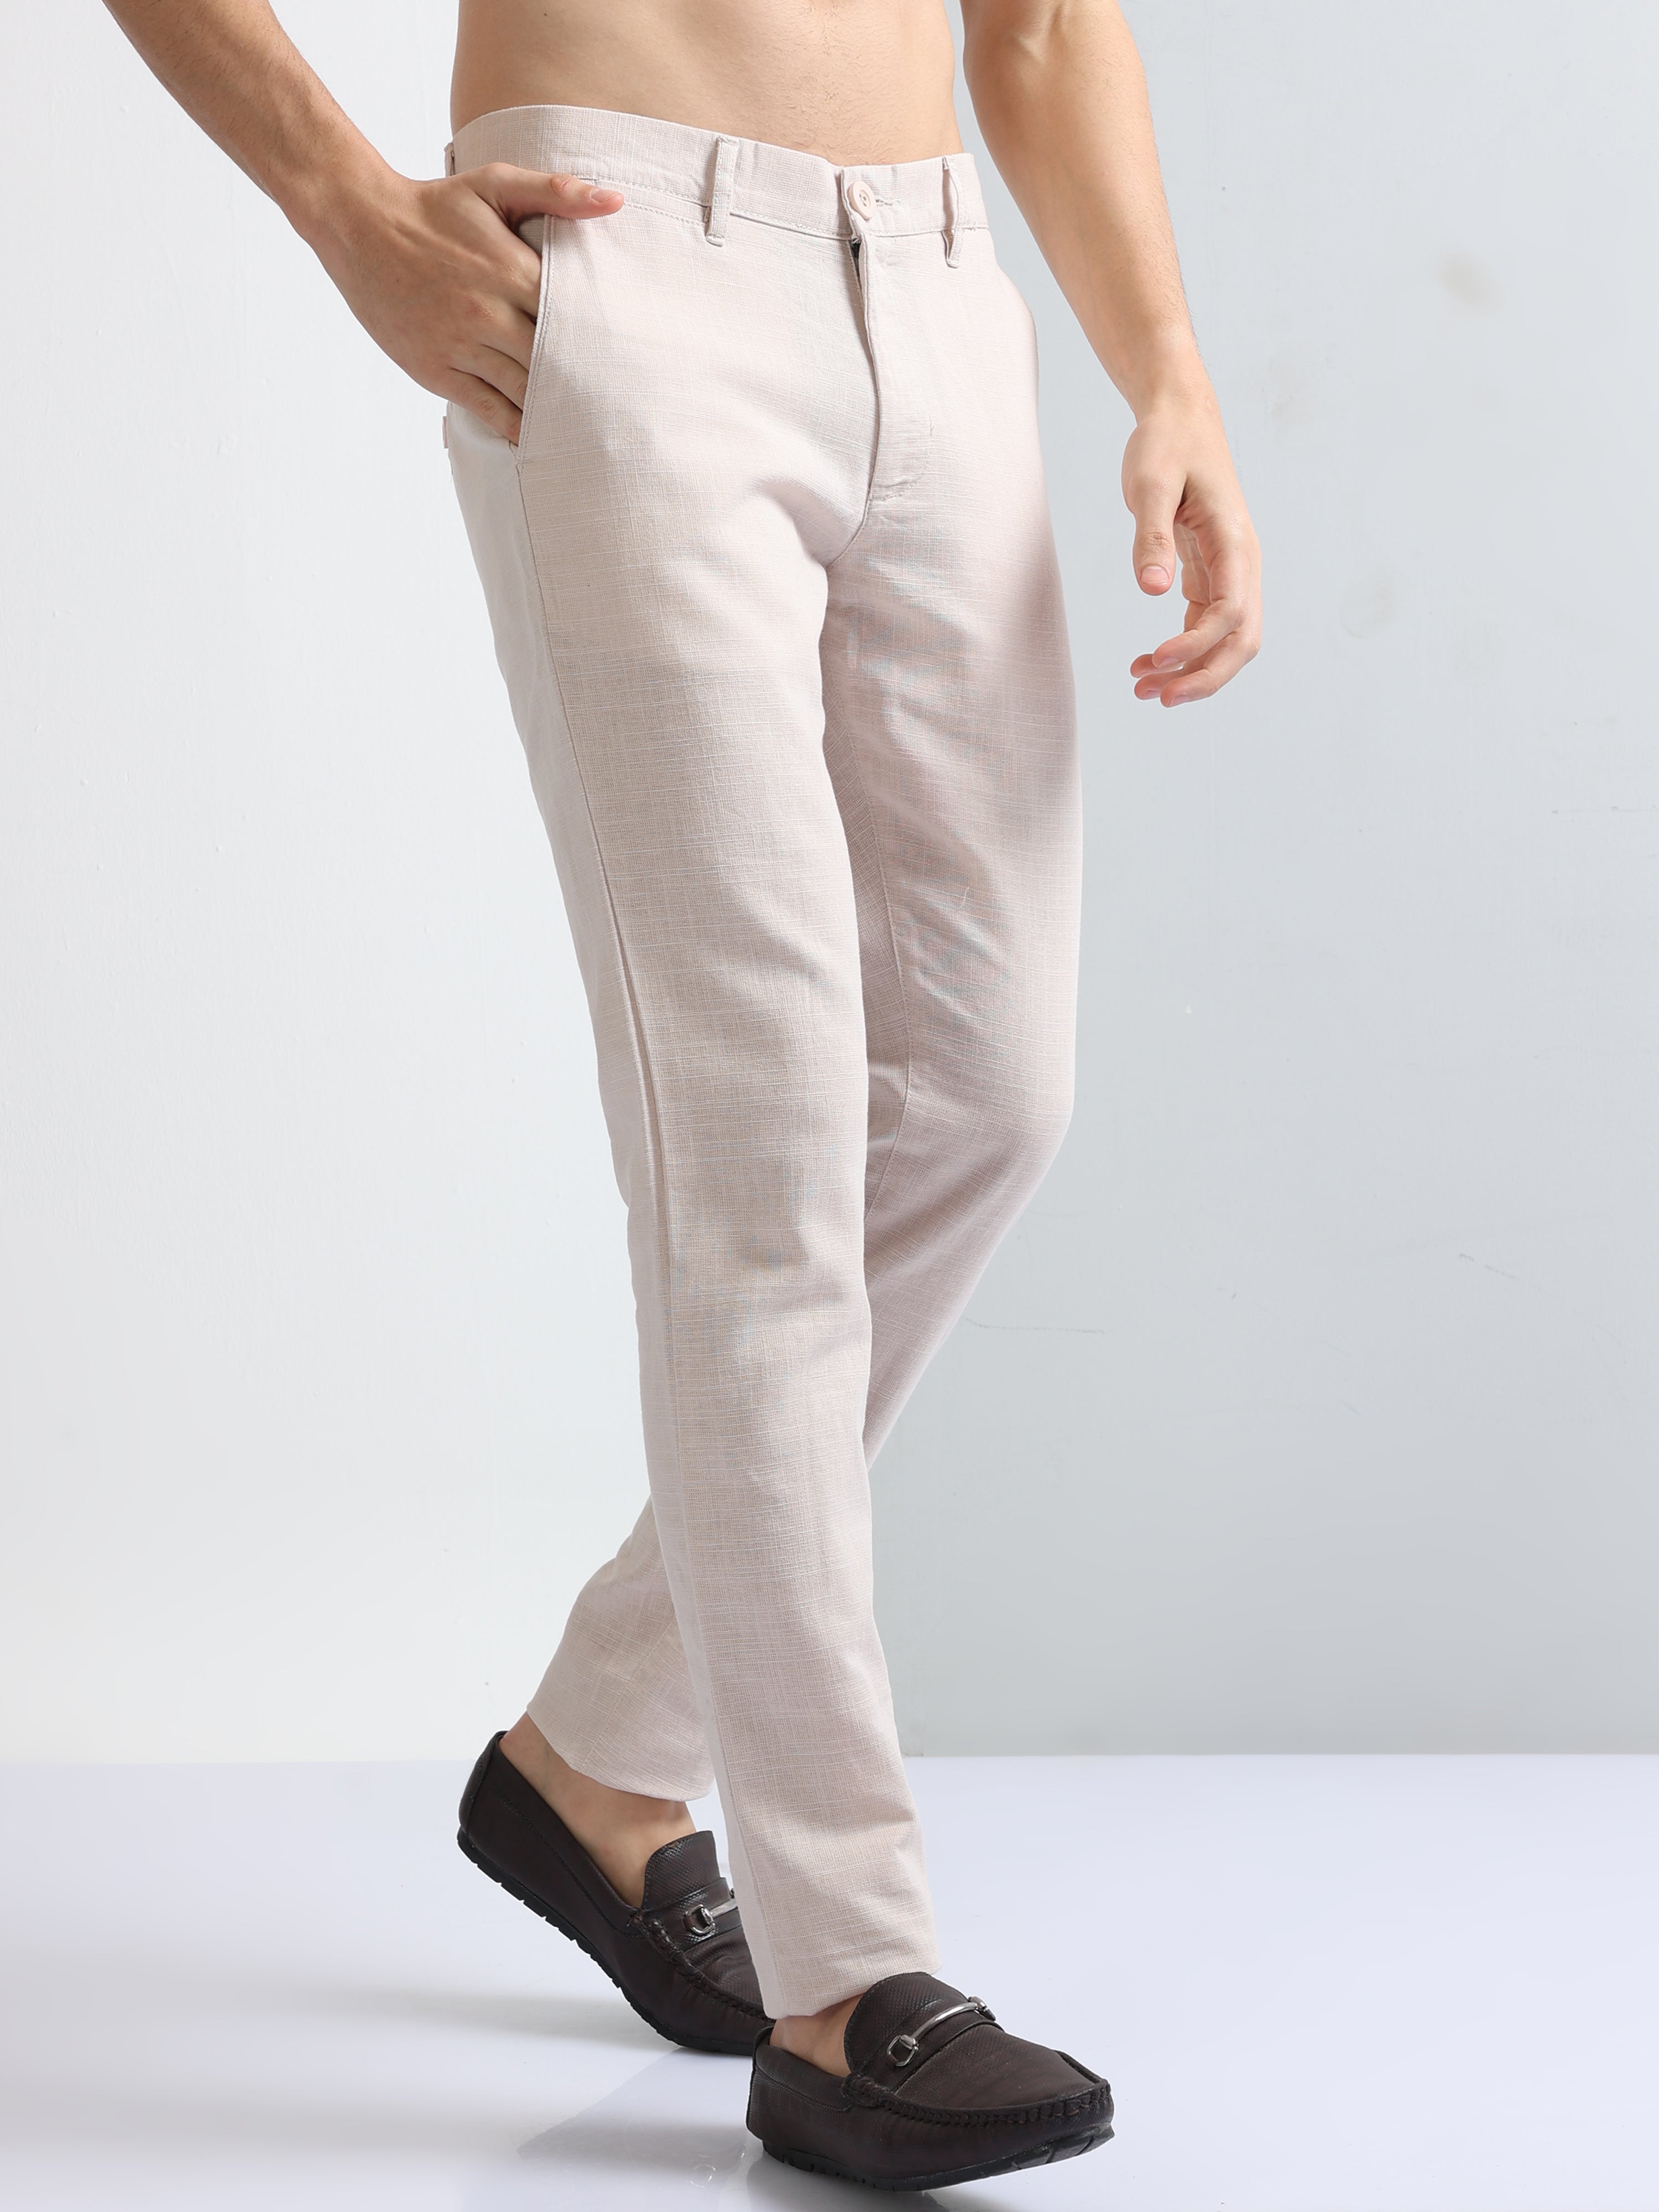 Formal Trouser: Shop Online Men Beige Cotton Blend Formal Trouser at Cliths